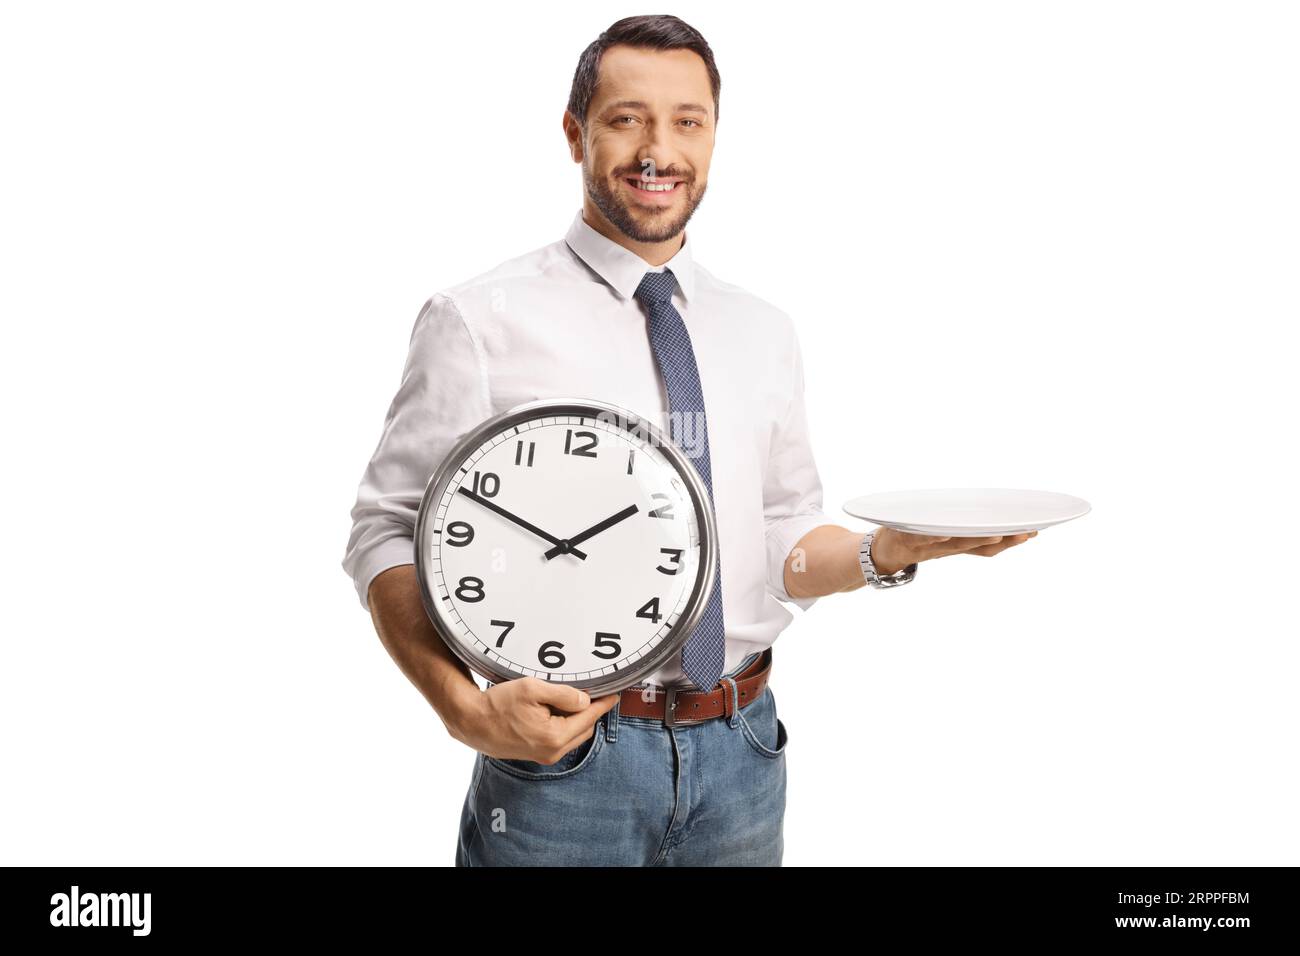 Mann, der einen leeren Teller und eine Uhr auf weißem Hintergrund hält Stockfoto